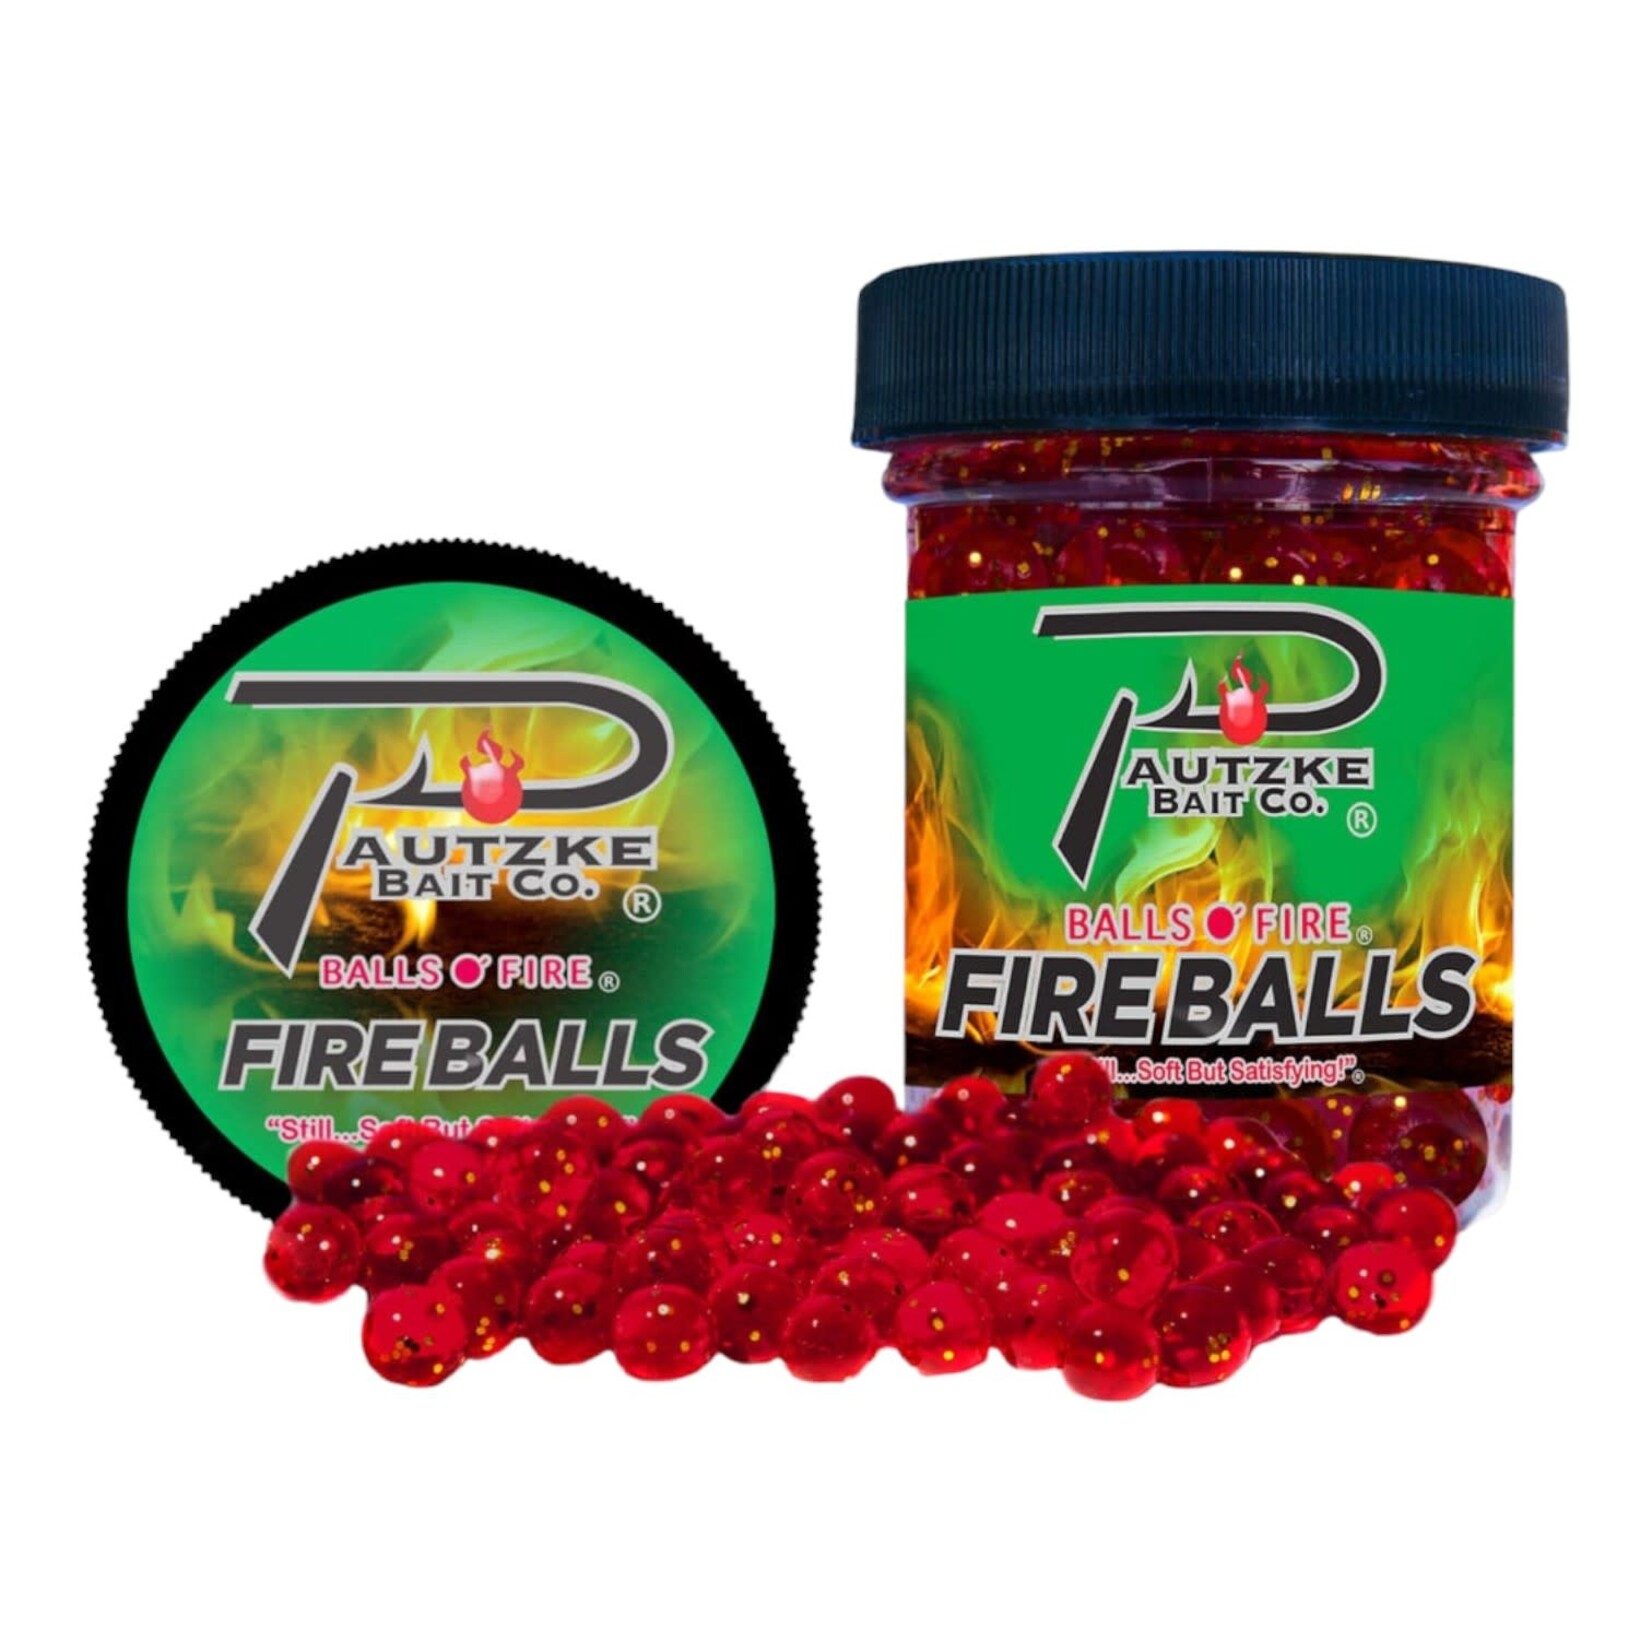 PAUTZKE BAIT.CO Appâts Pautzke Fire Balls Red Glitter 1.5 Oz